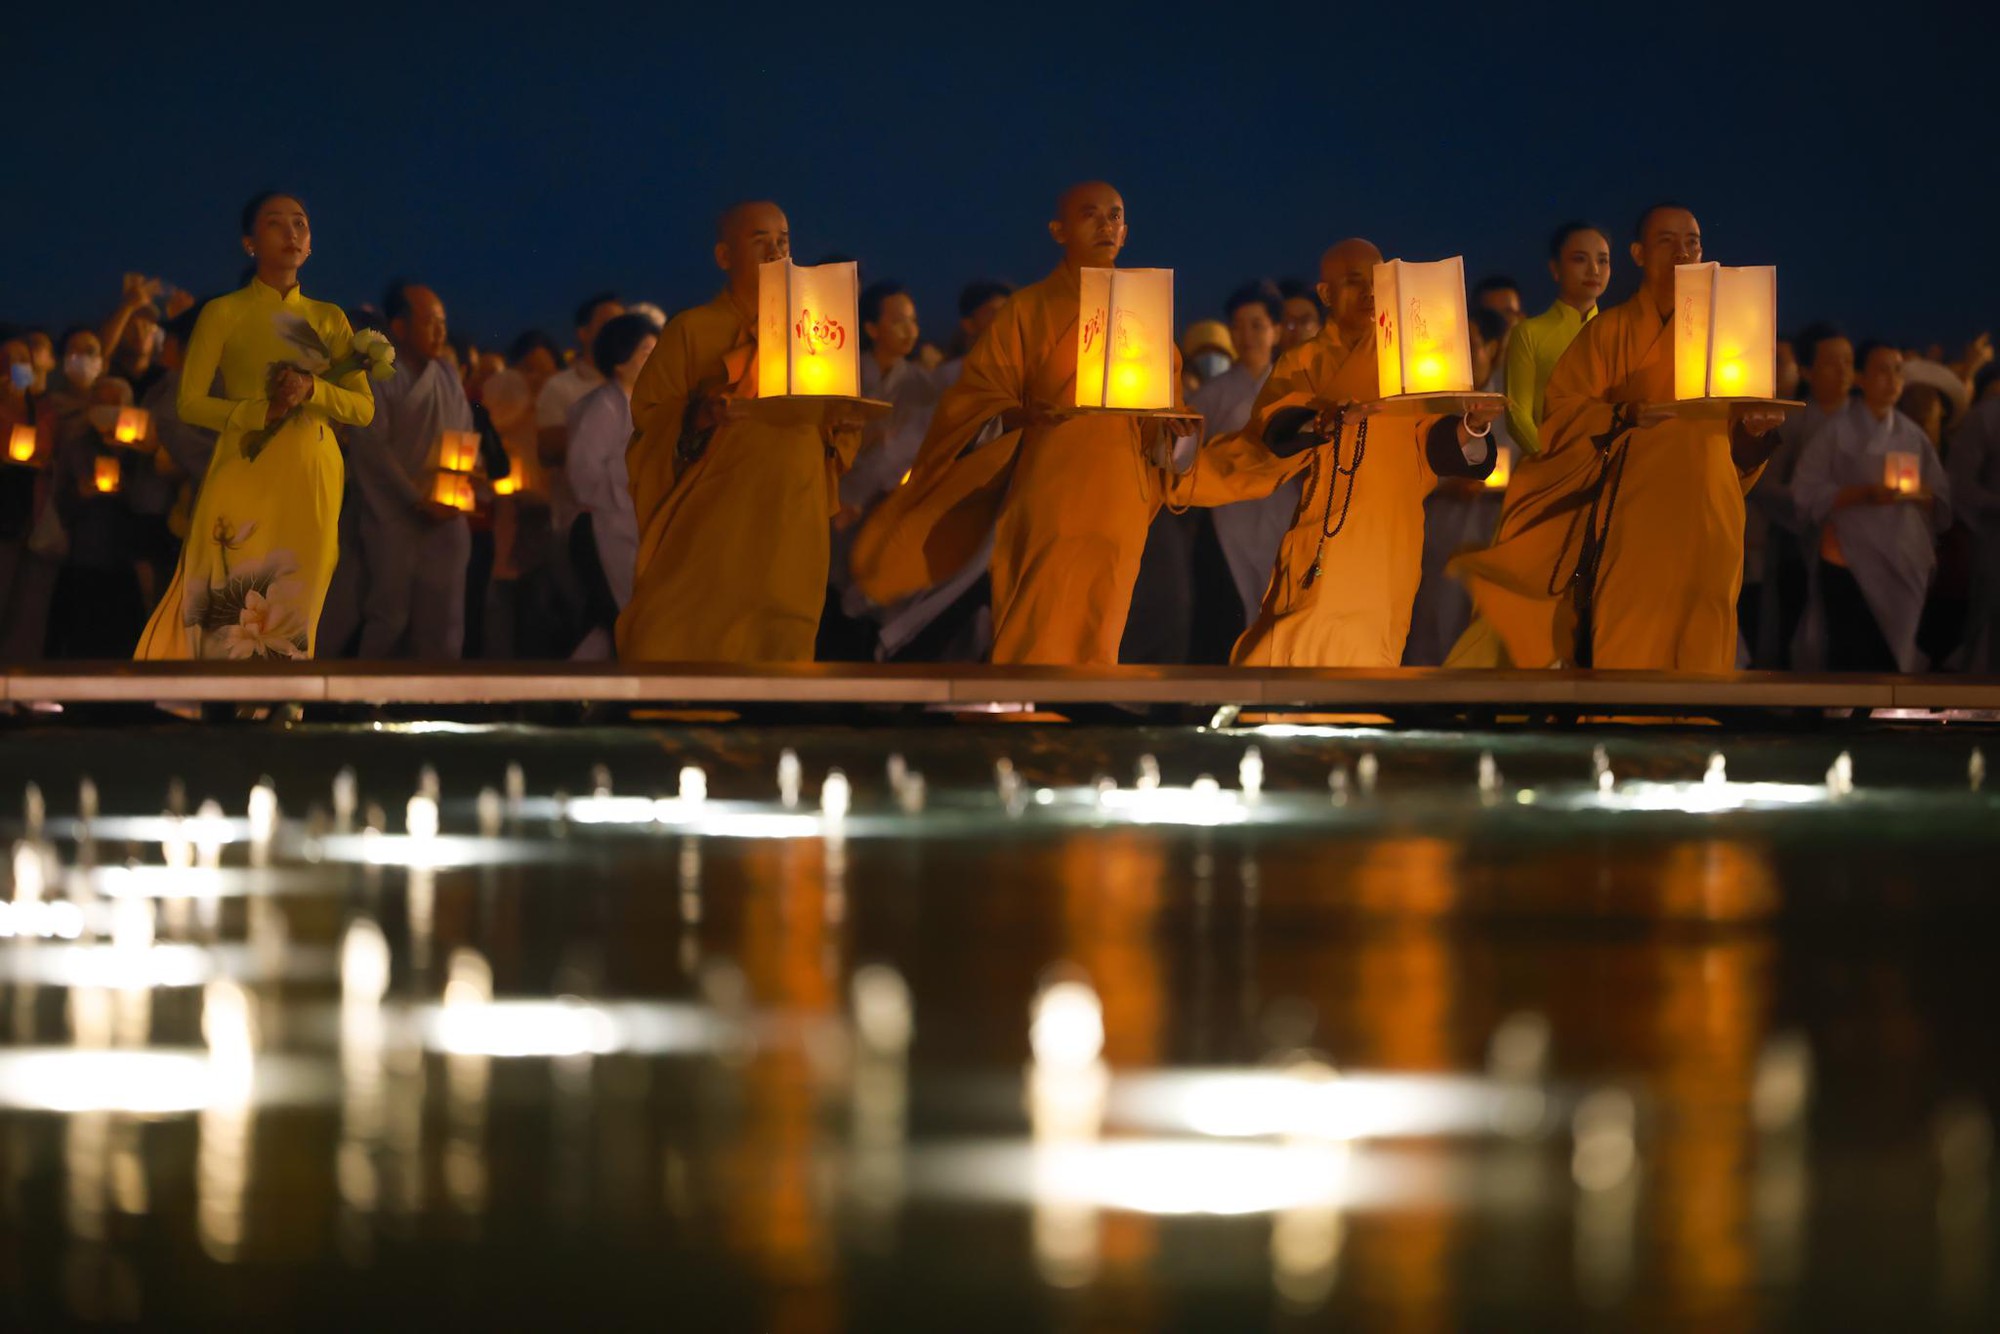 Chương trình văn hóa nghệ thuật Phật giáo mừng Lễ Vu Lan sẽ được tổ chức trang trọng tại Núi Bà Đen, Tây Ninh - Ảnh 4.